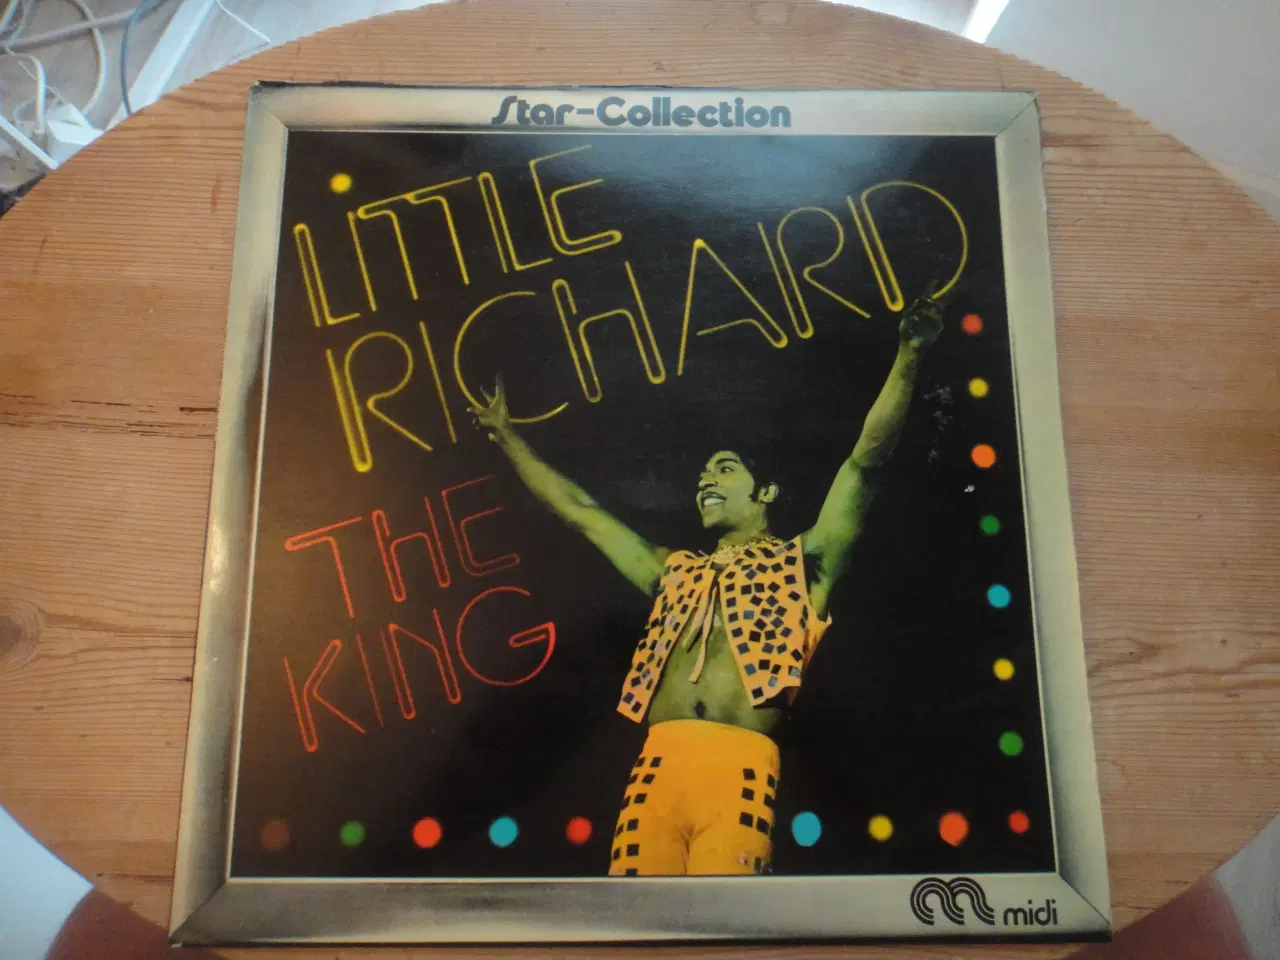 Billede 1 - LP - Little Richard - Star Collection i god stand 